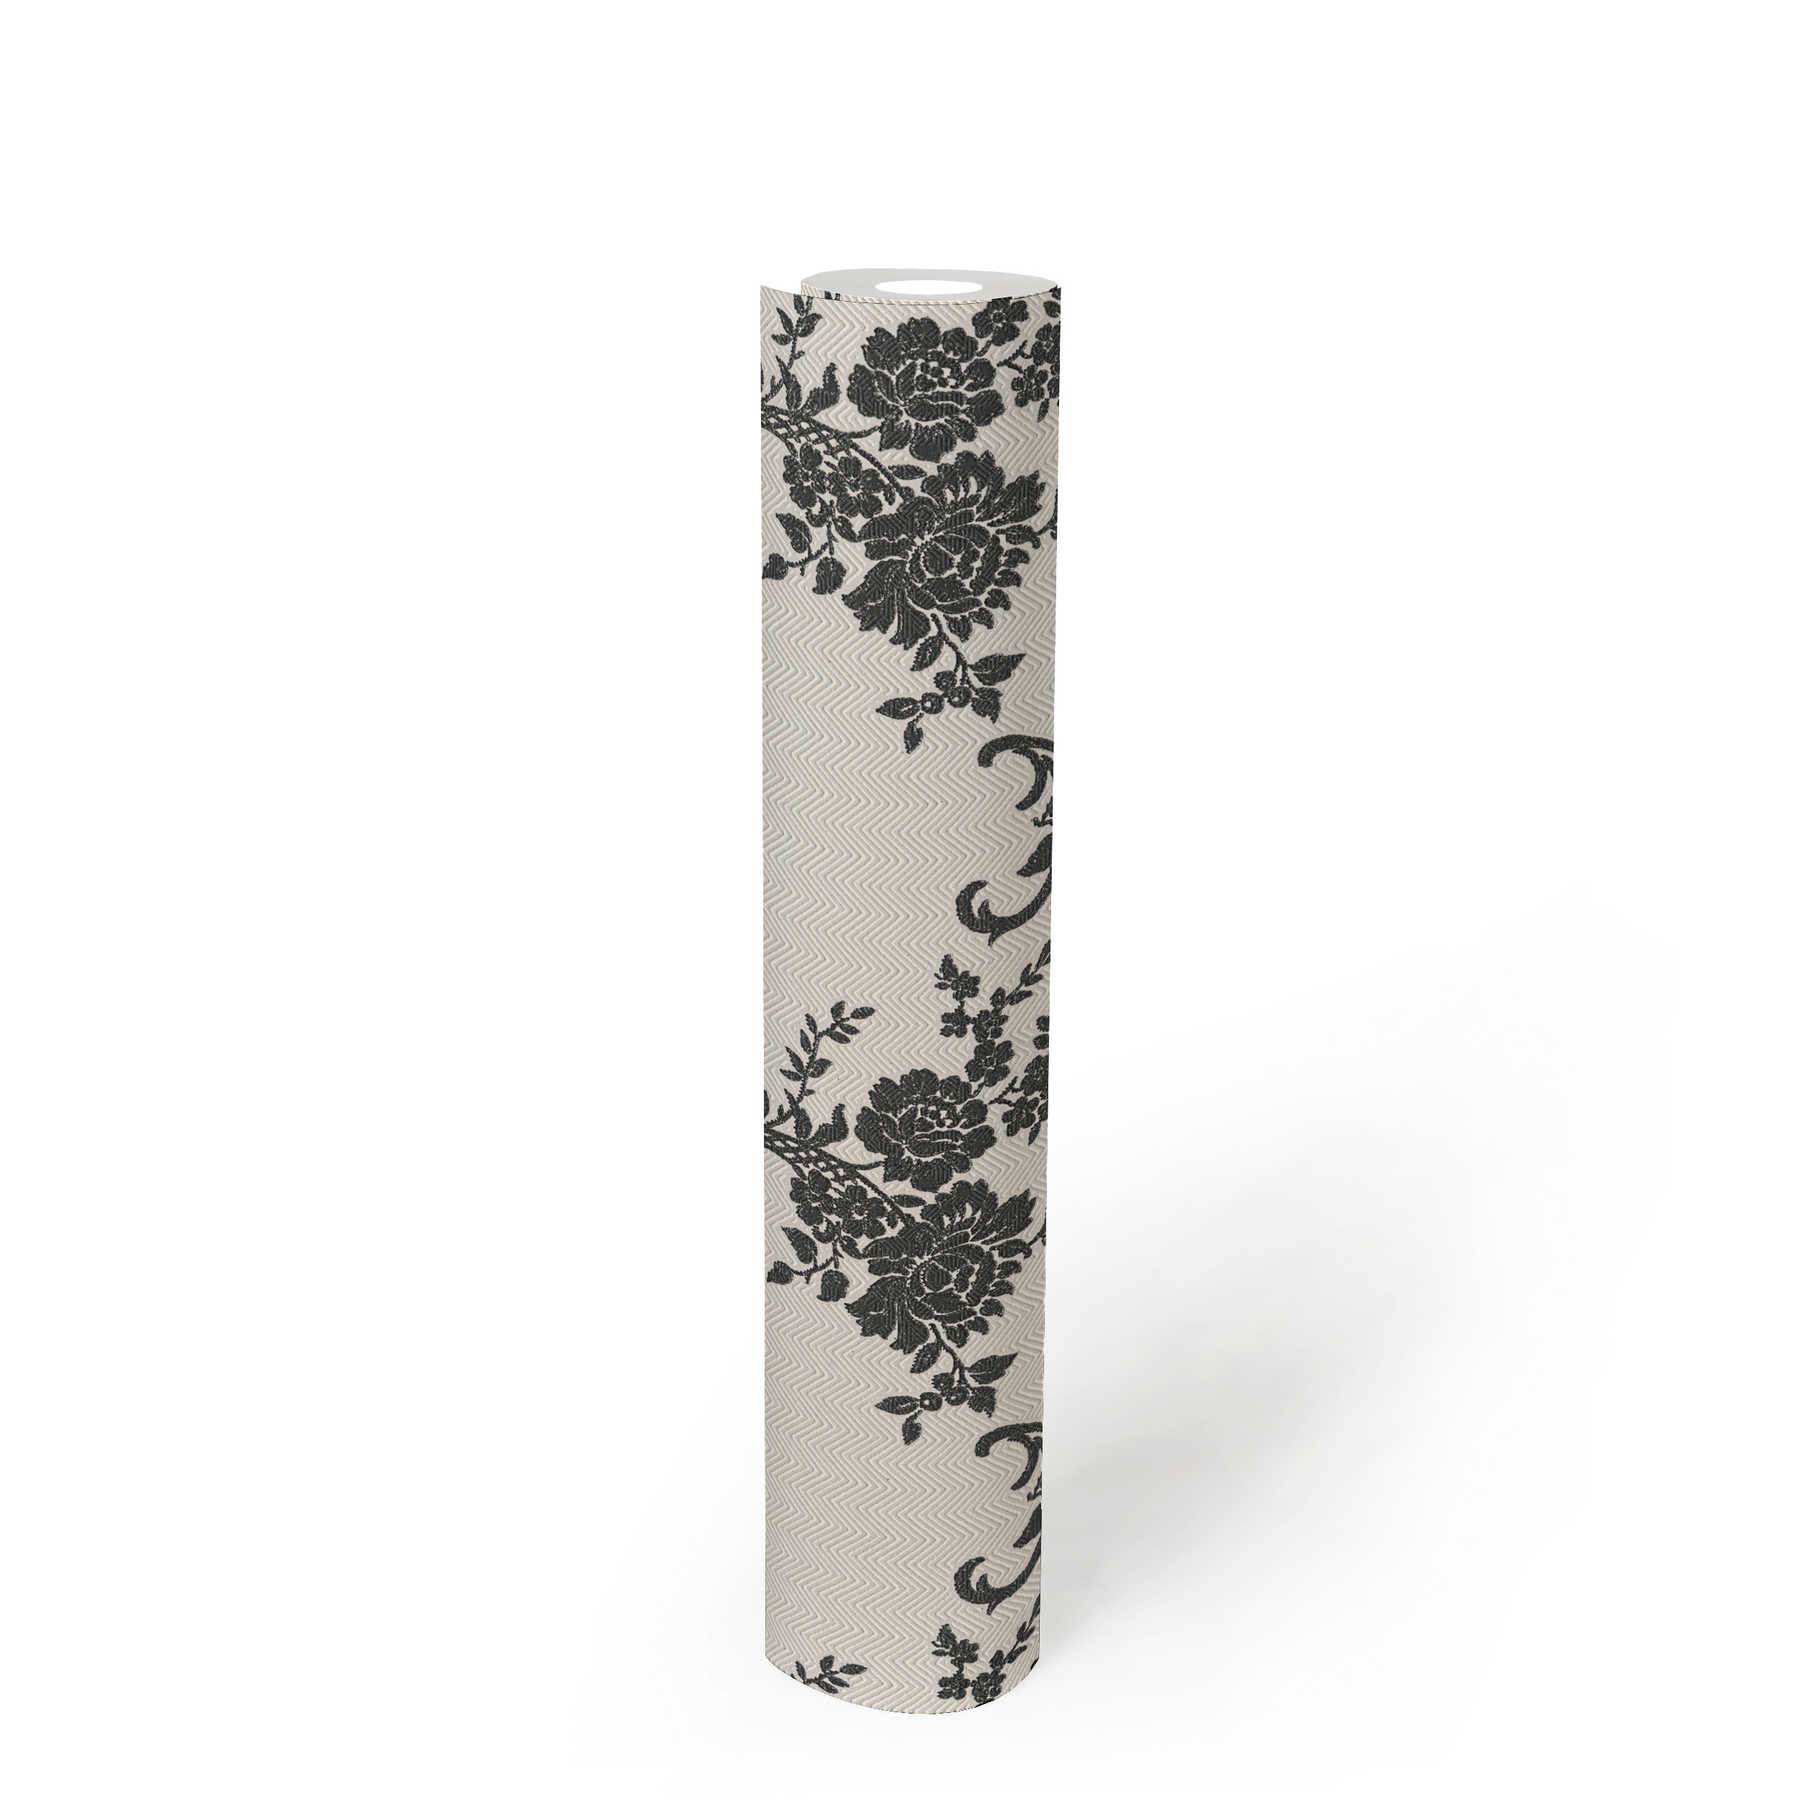             Papier peint ornements floraux & motif chevron - noir, blanc, argenté
        